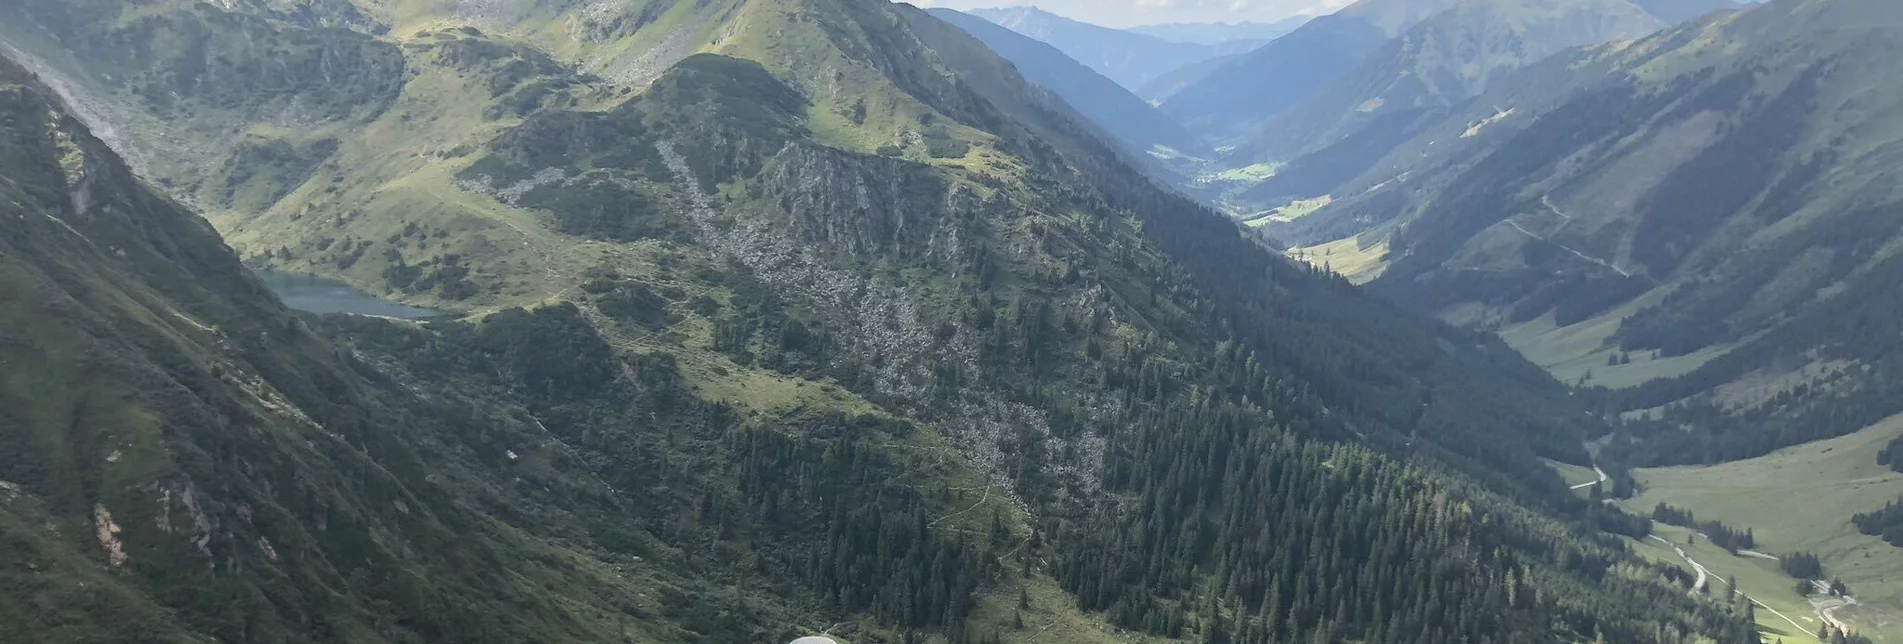 Mountain Hike Hornfeldspitze 2.277m - Touren-Impression #1 | © Erlebnisregion Schladming-Dachstein